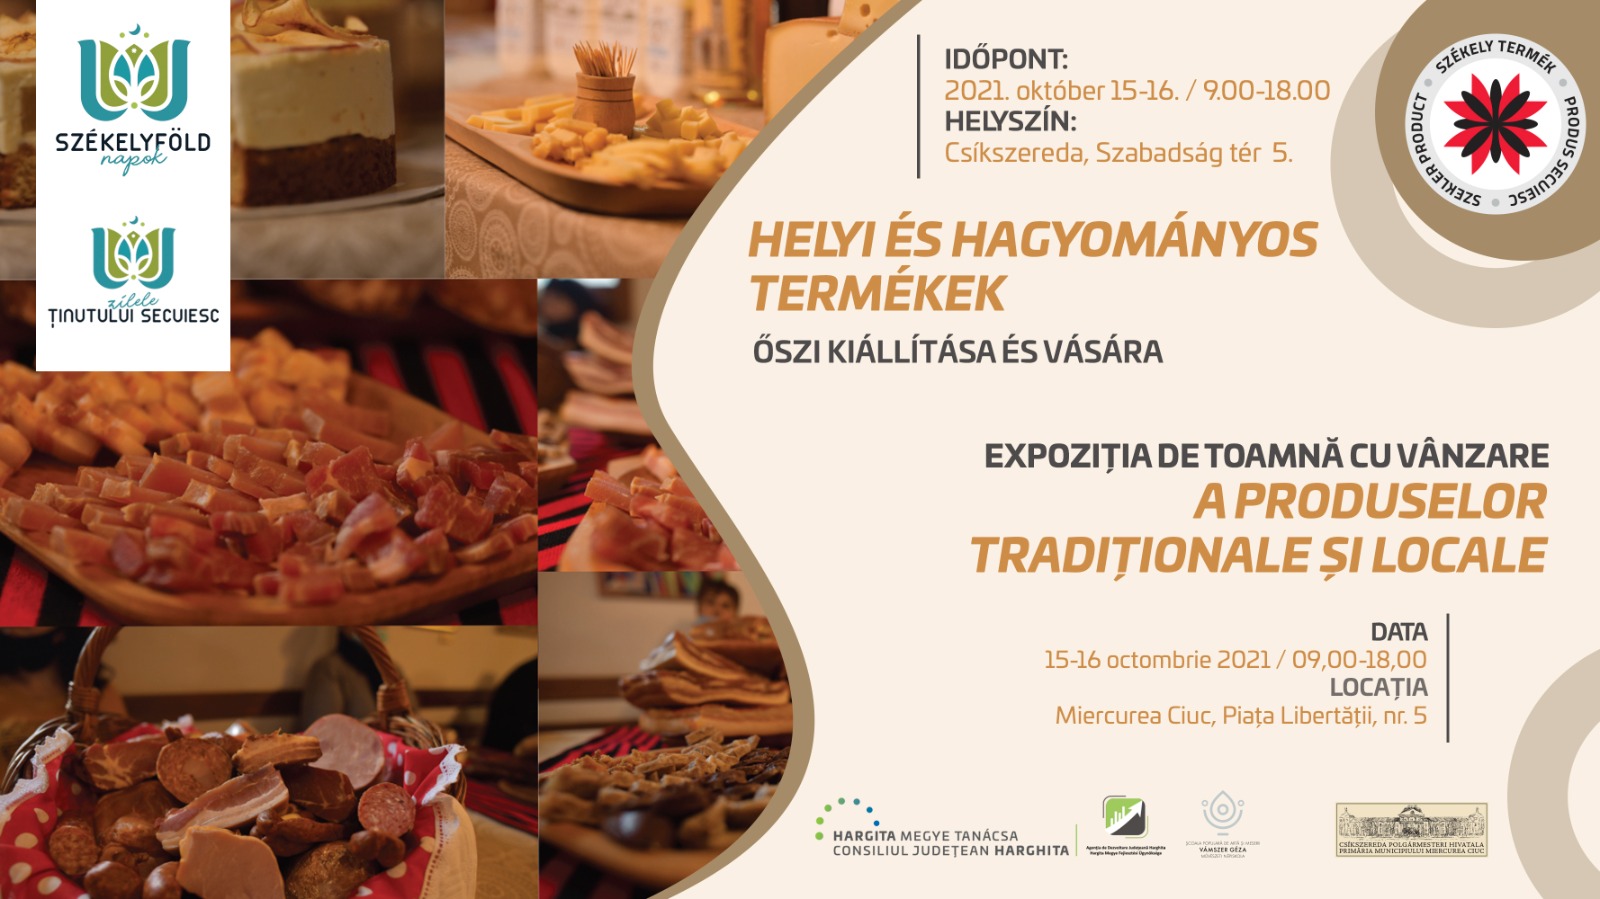 Expoziția cu vânzare a produselor tradiționale și locale (Miercurea-Ciuc)